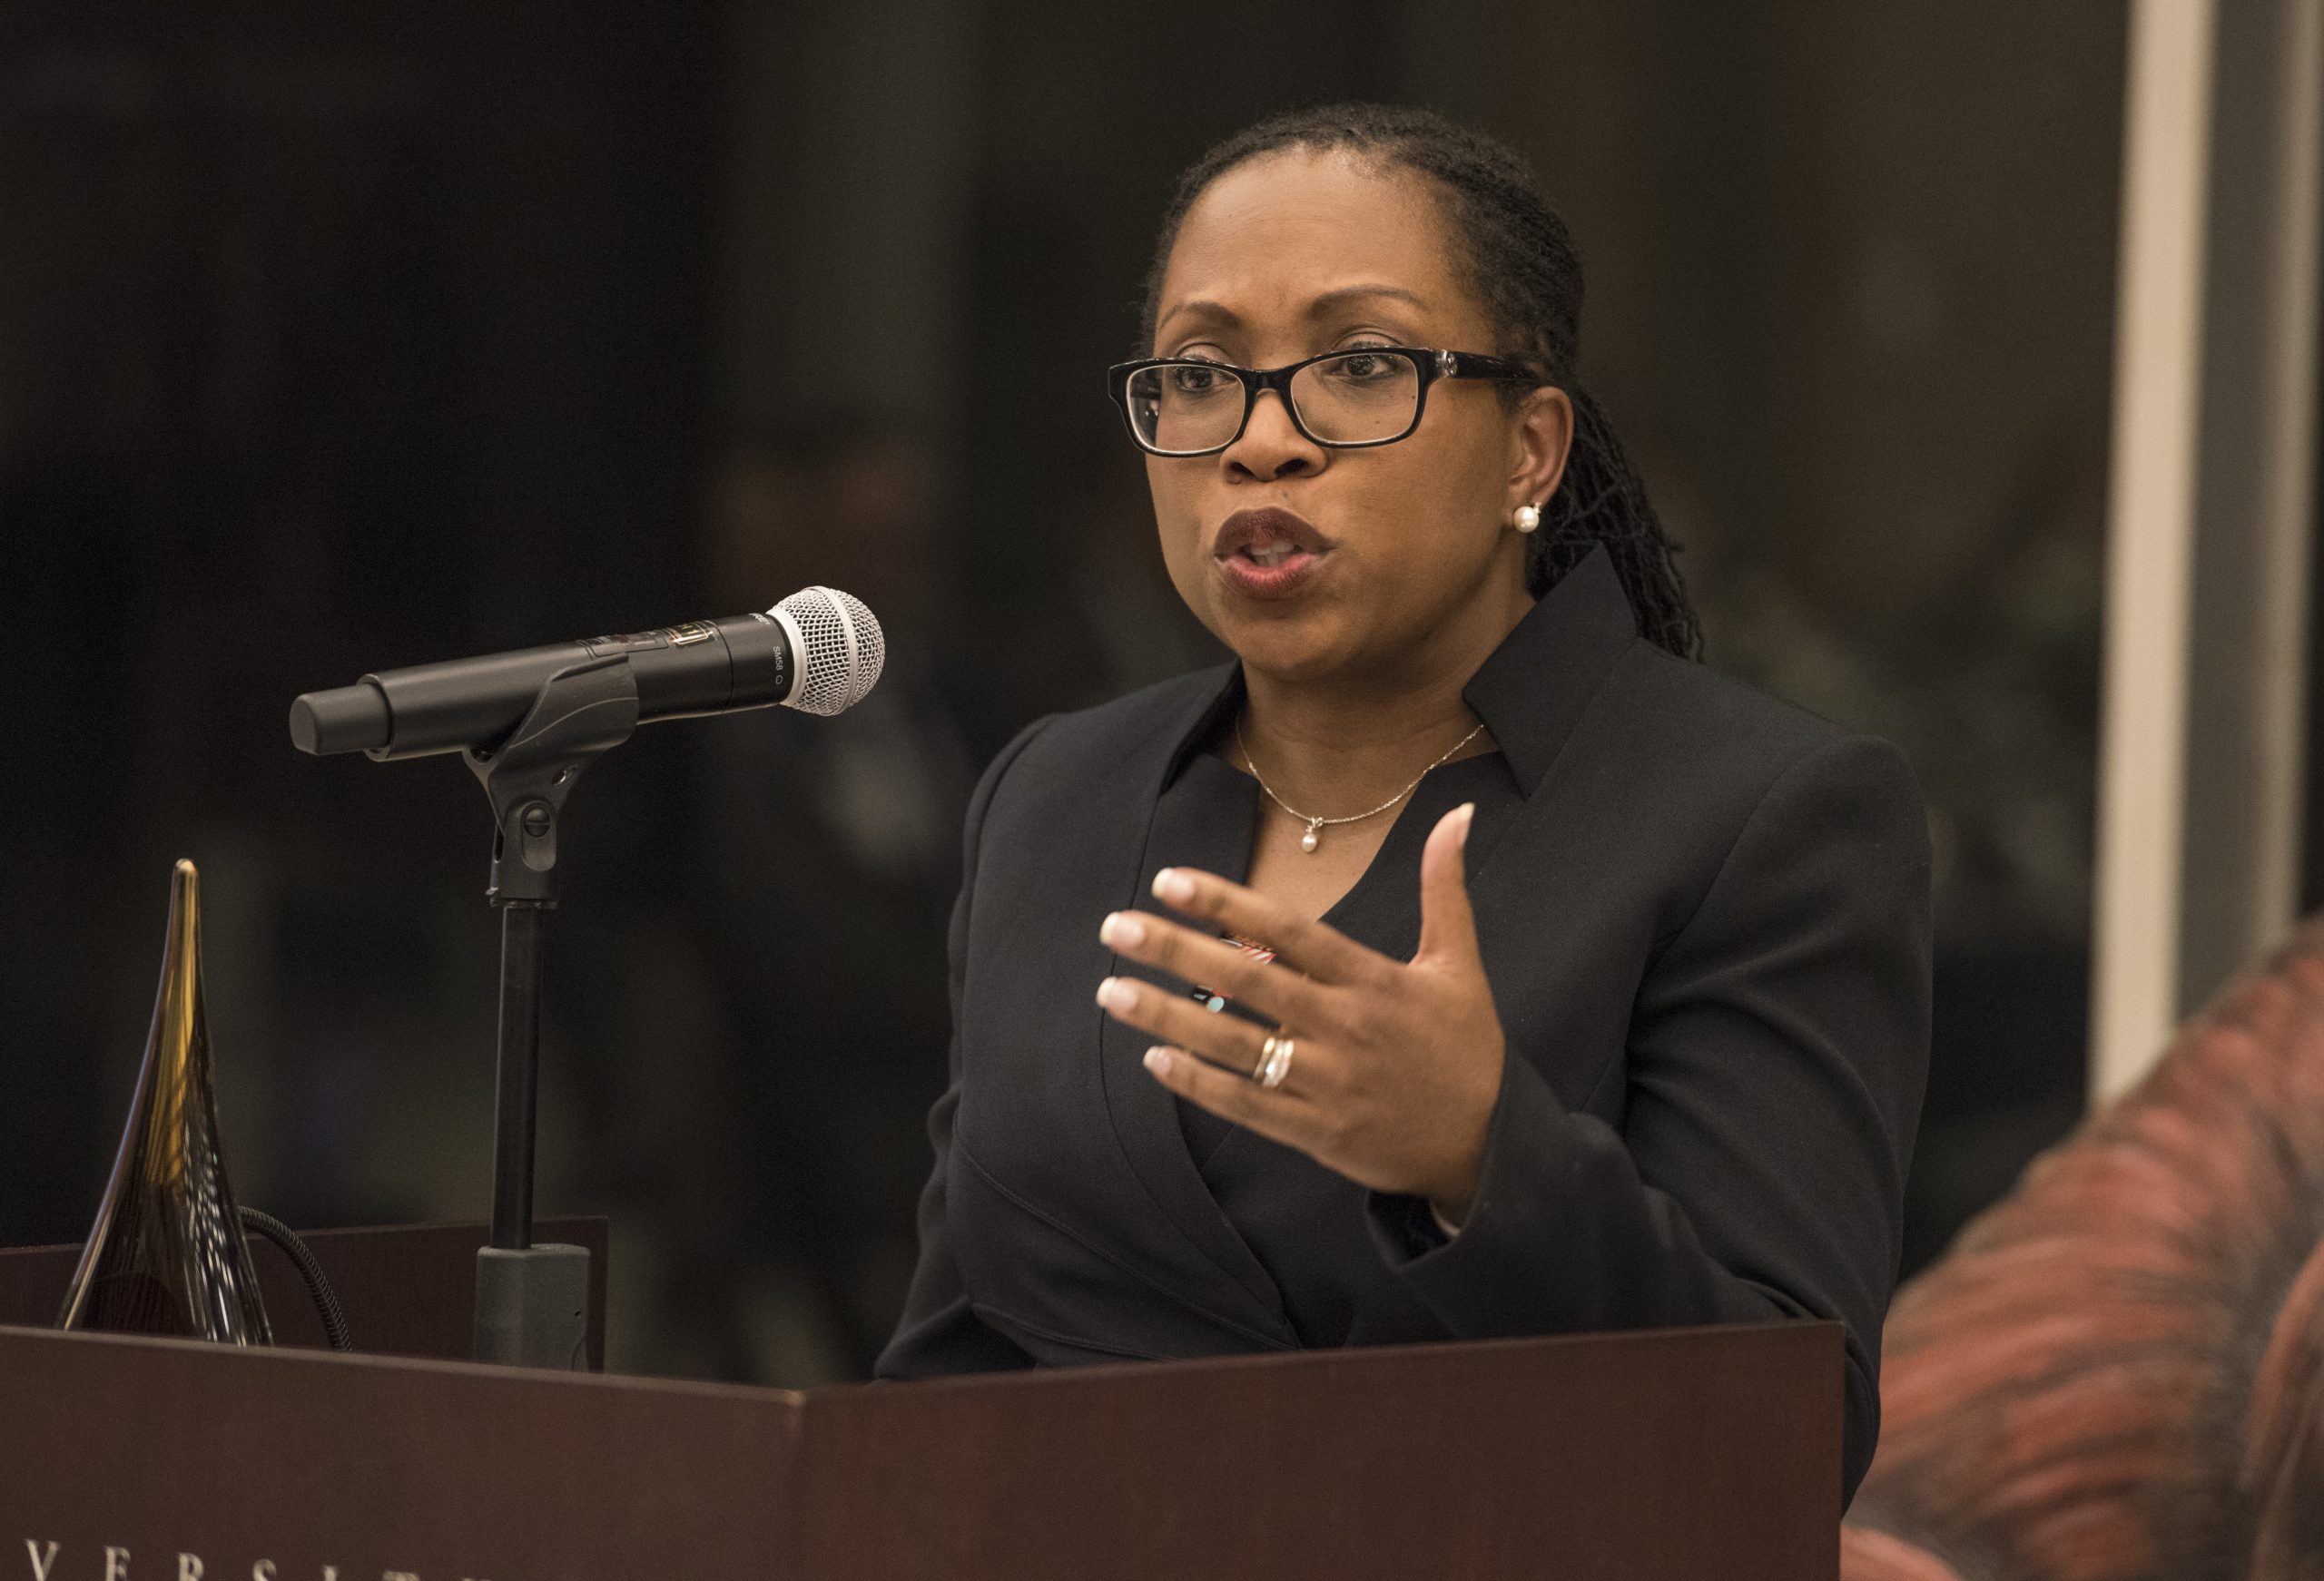 Yhdysvaltain korkeimman oikeuden tuomari Ketanji Brown Jackson on ensimmäinen musta naistuomari koko Yhdysvaltain tuomioistuimen historian aikana